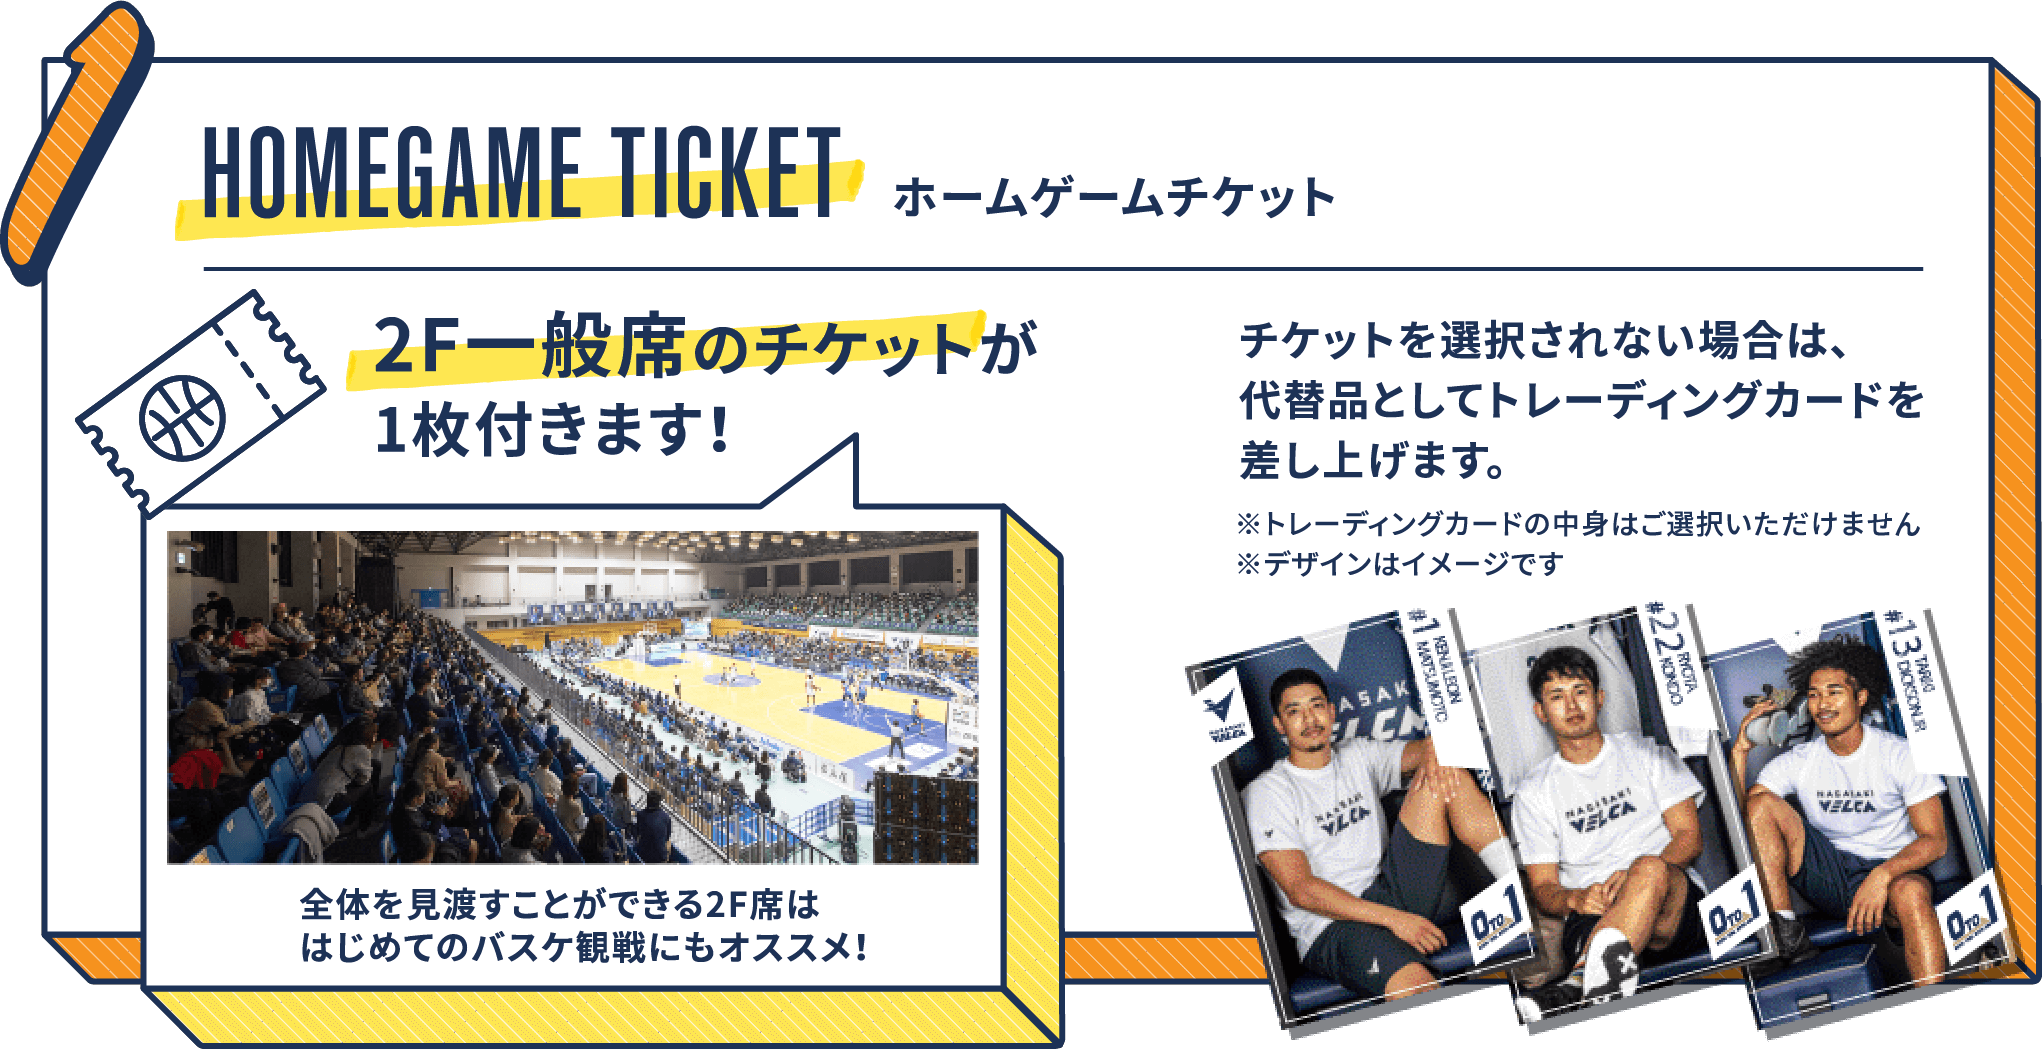 HOMEGAME TICKET 2F一般席のチケットが1枚付きます。※チケットを選択されない場合は、代替品としてトレーディングカードを差し上げます。全体を見渡すことができる2F席は、はじめてのバスケ観戦にもオススメ！